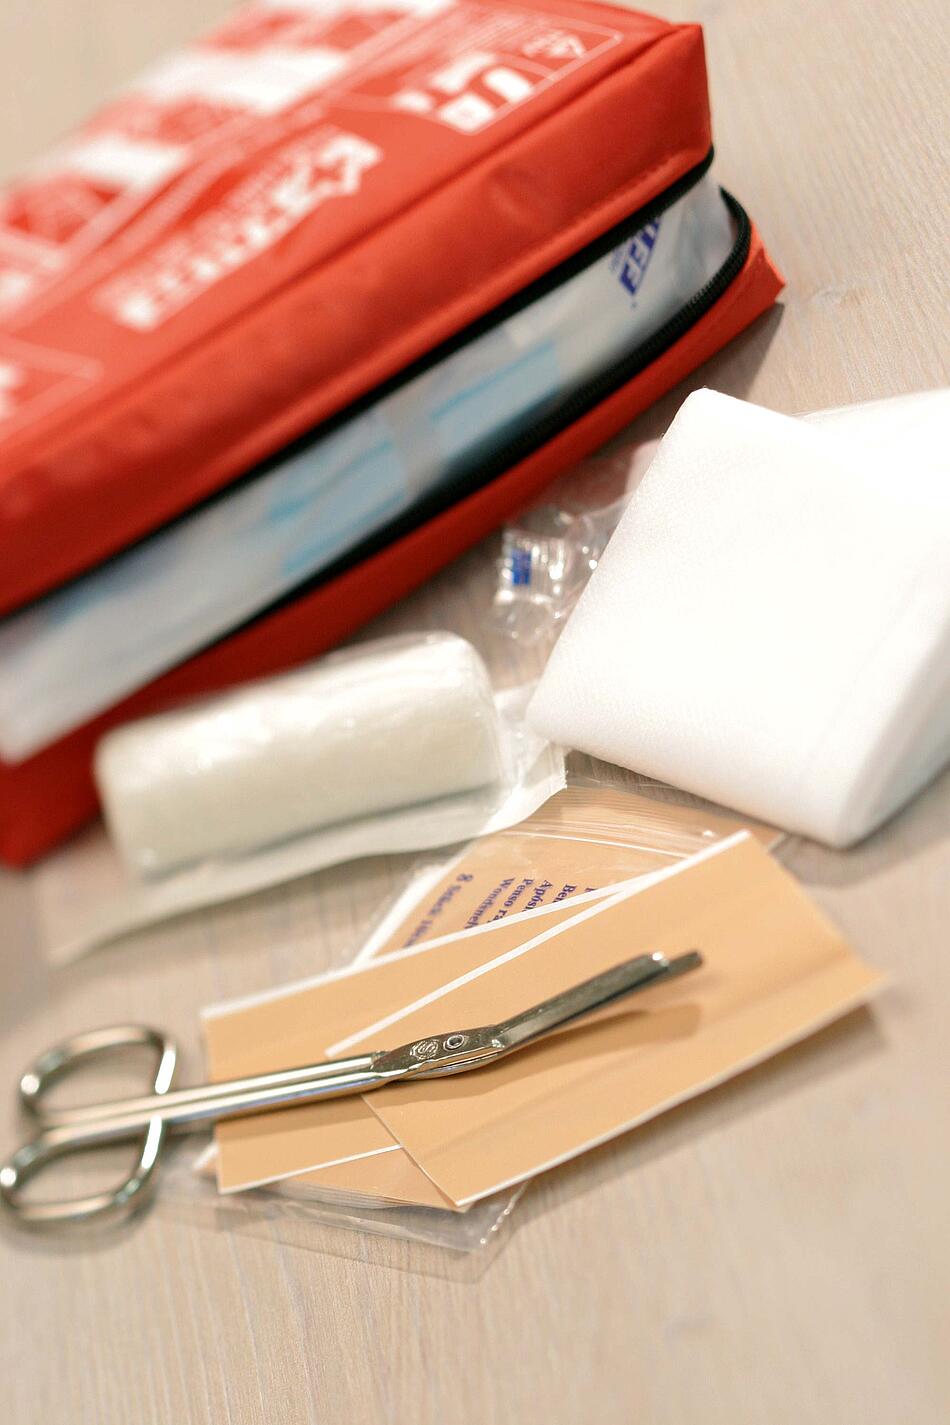 Erste Hilfe Tasche mit Verbandmaterial, Pflaster und Schere.